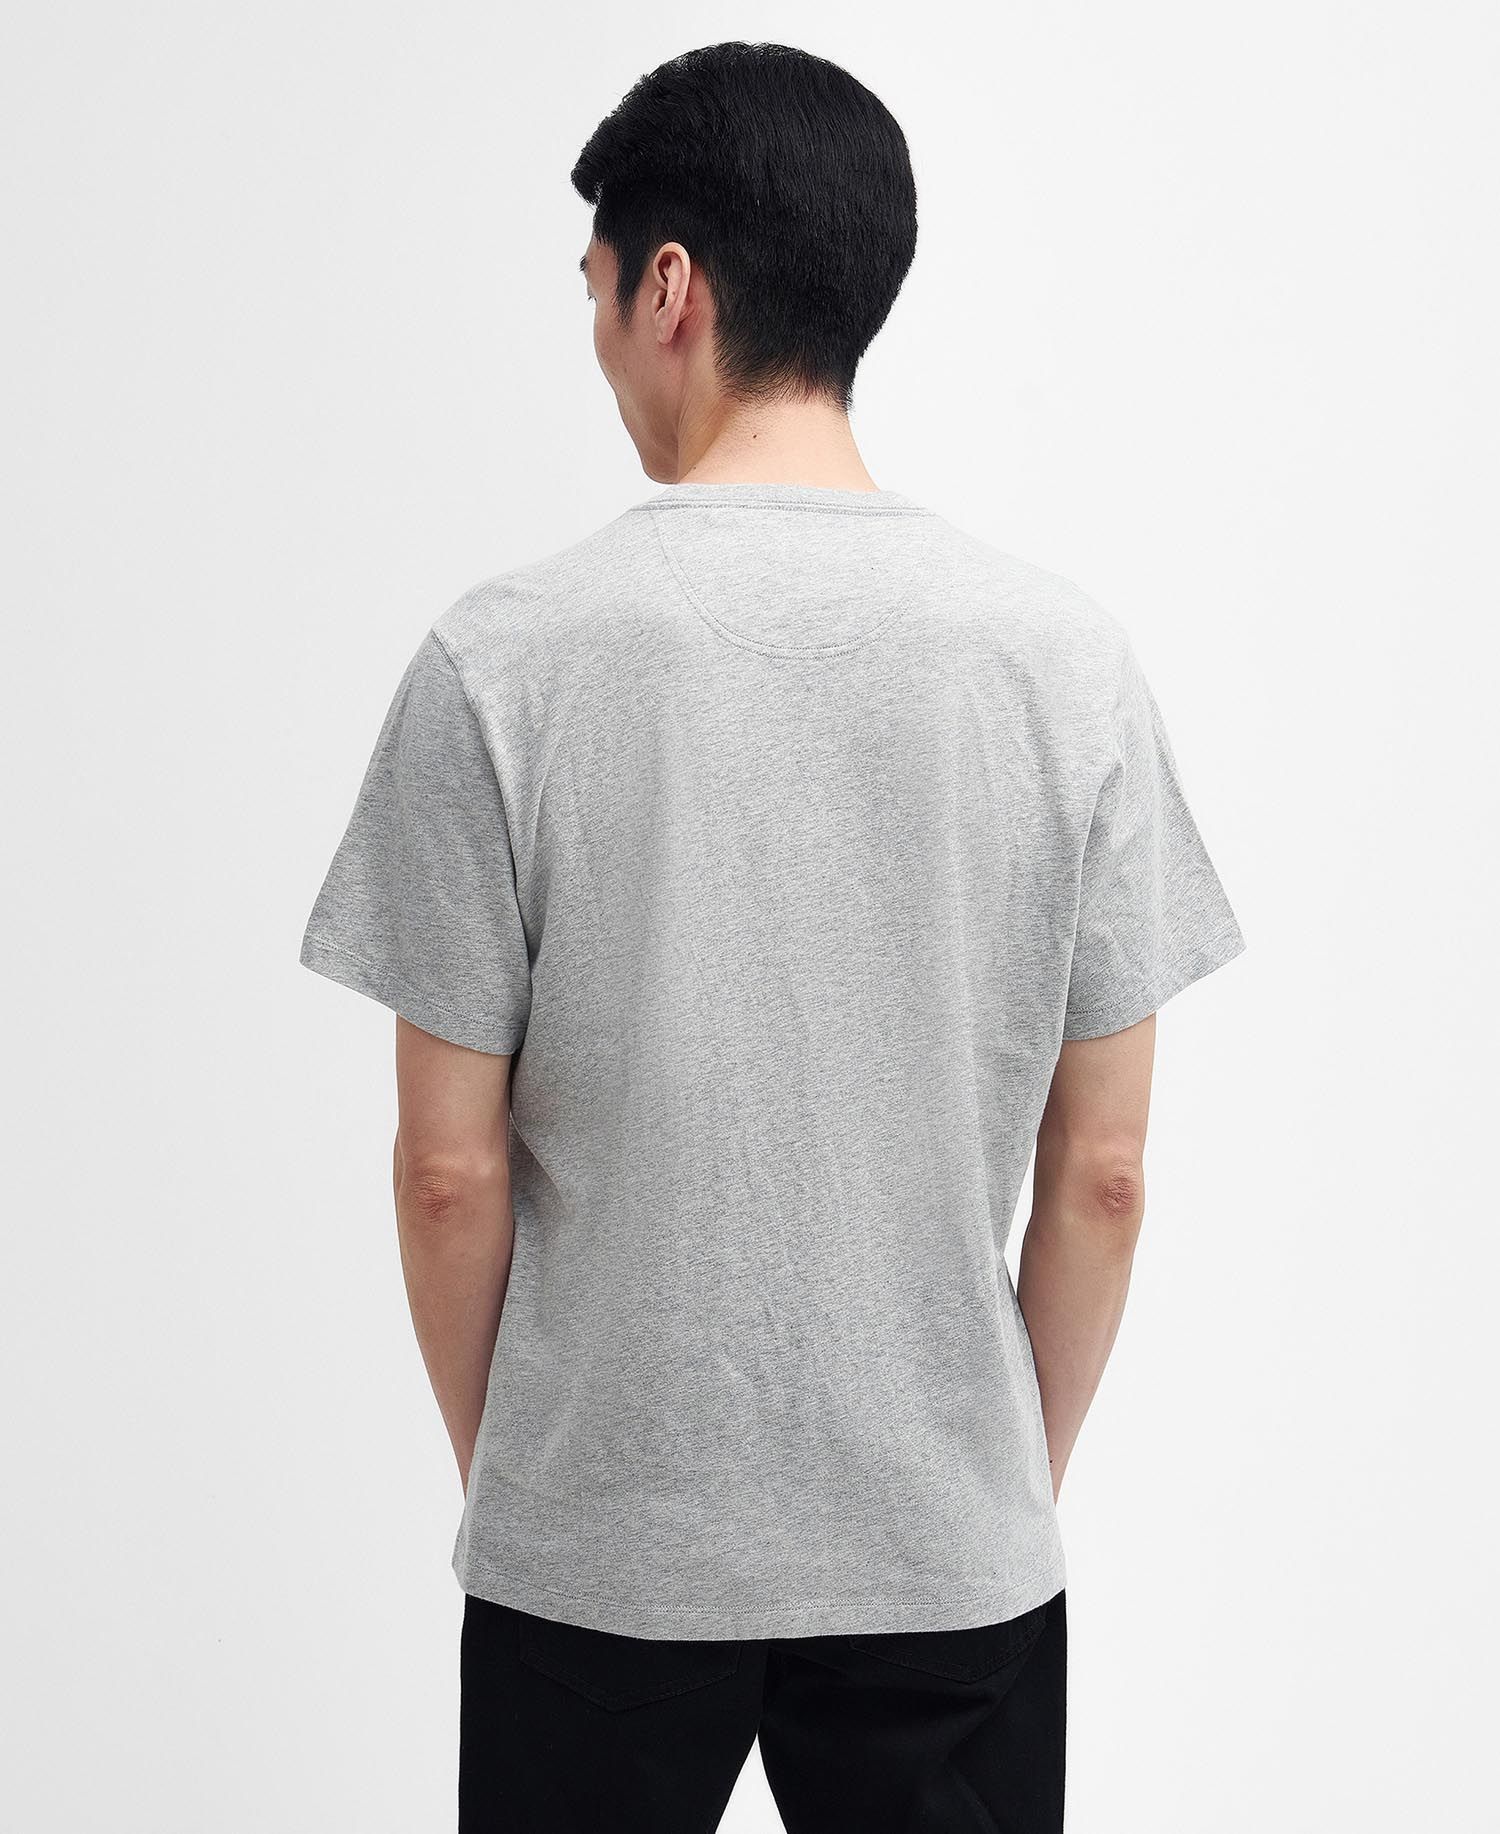 Barbour International SMQ Mount T-Shirt - Grey Marl